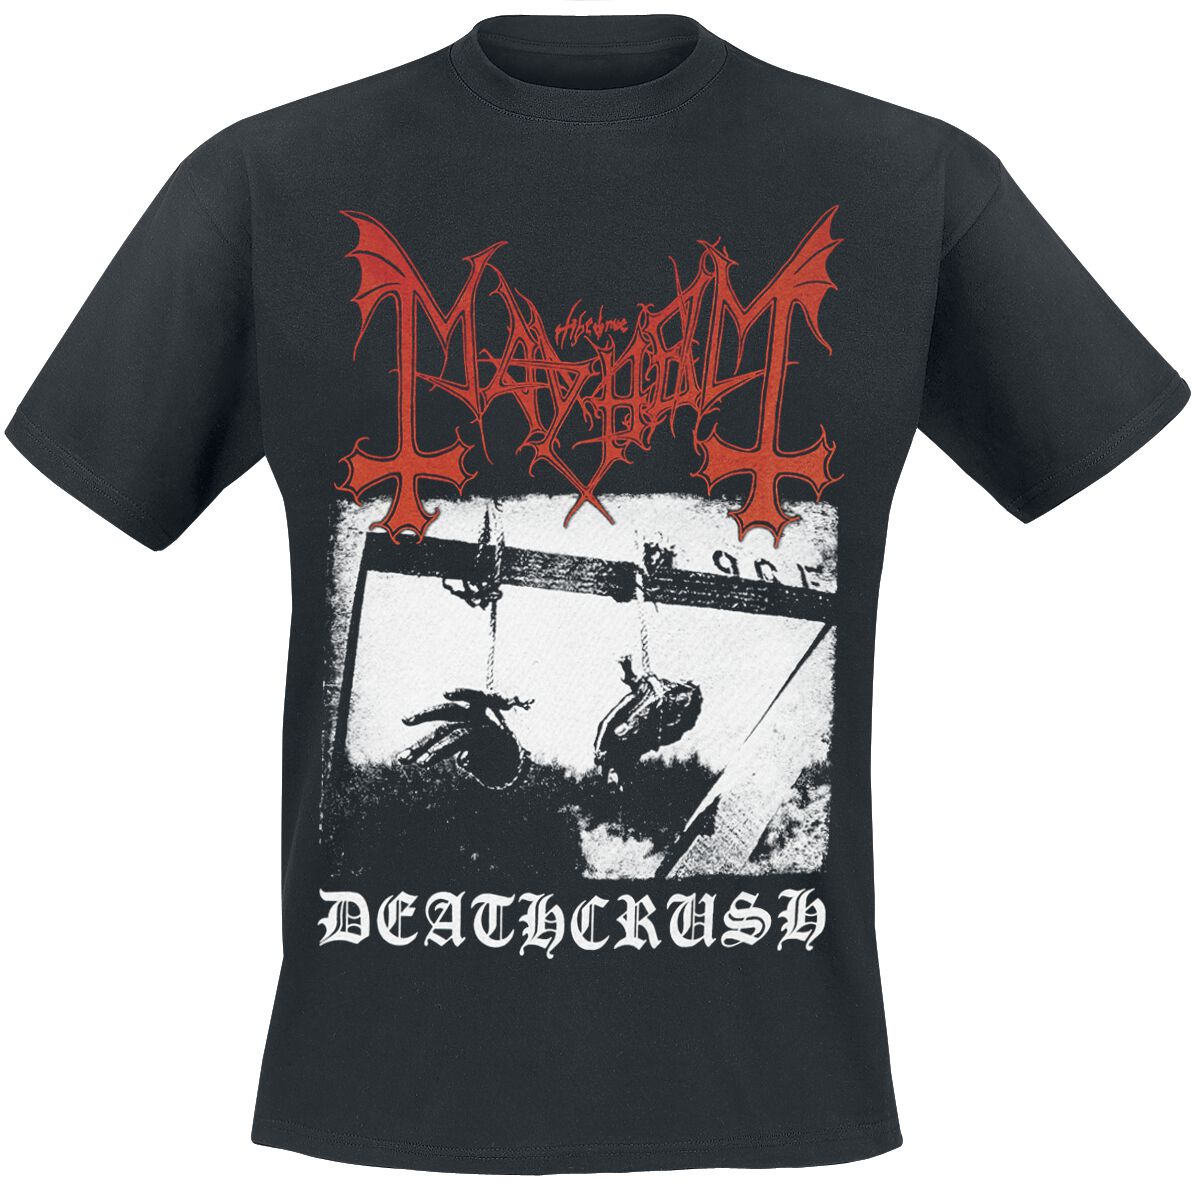 Deathcrush, Mayhem T-Shirt